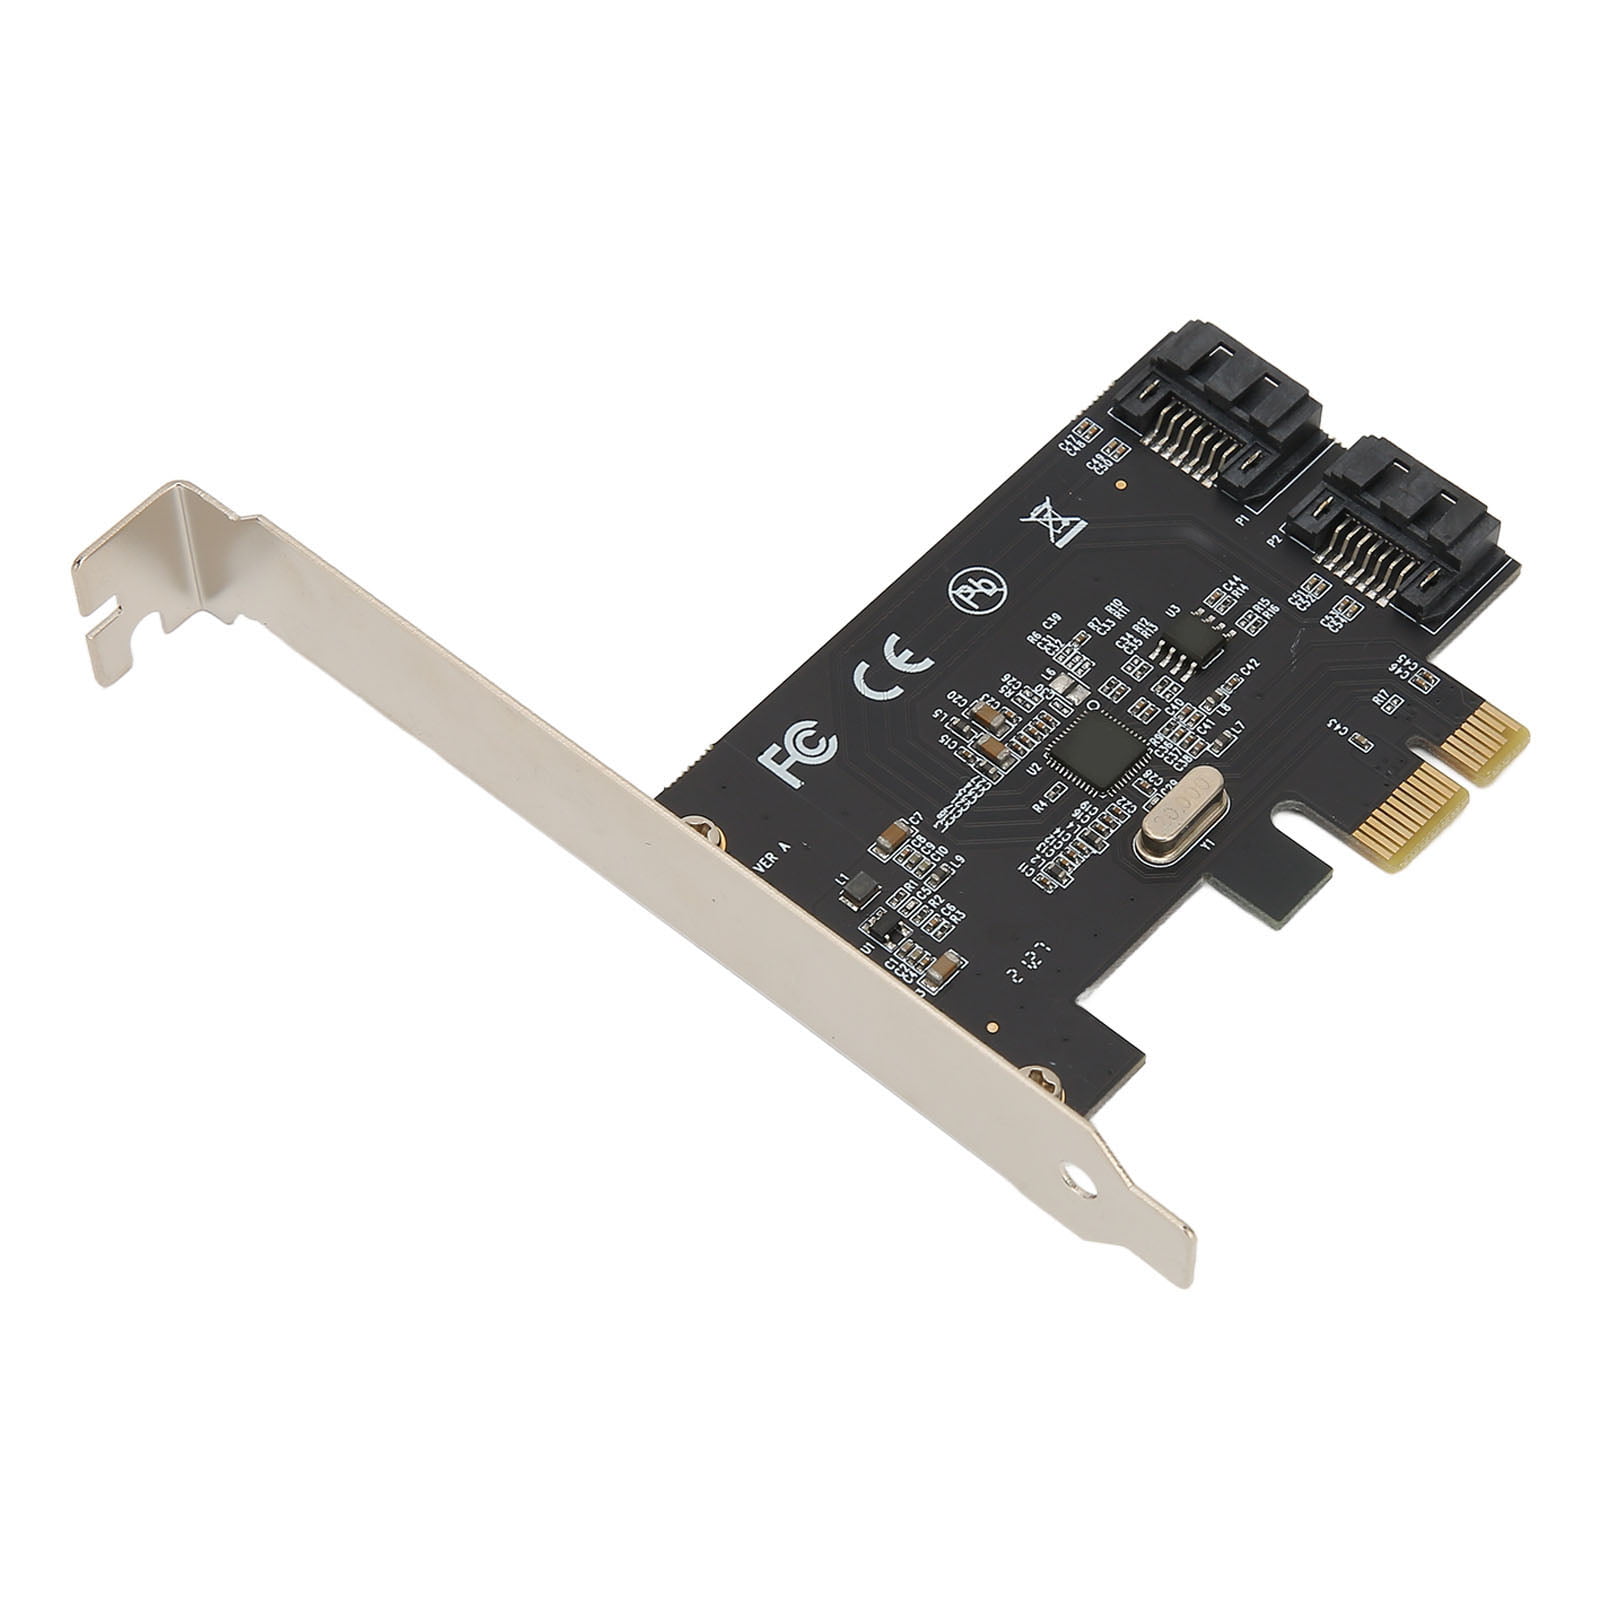 PCIe 3.0 Card, PCIE 2.0 6.0Gbps To 3.0 Card For Server - Walmart.com